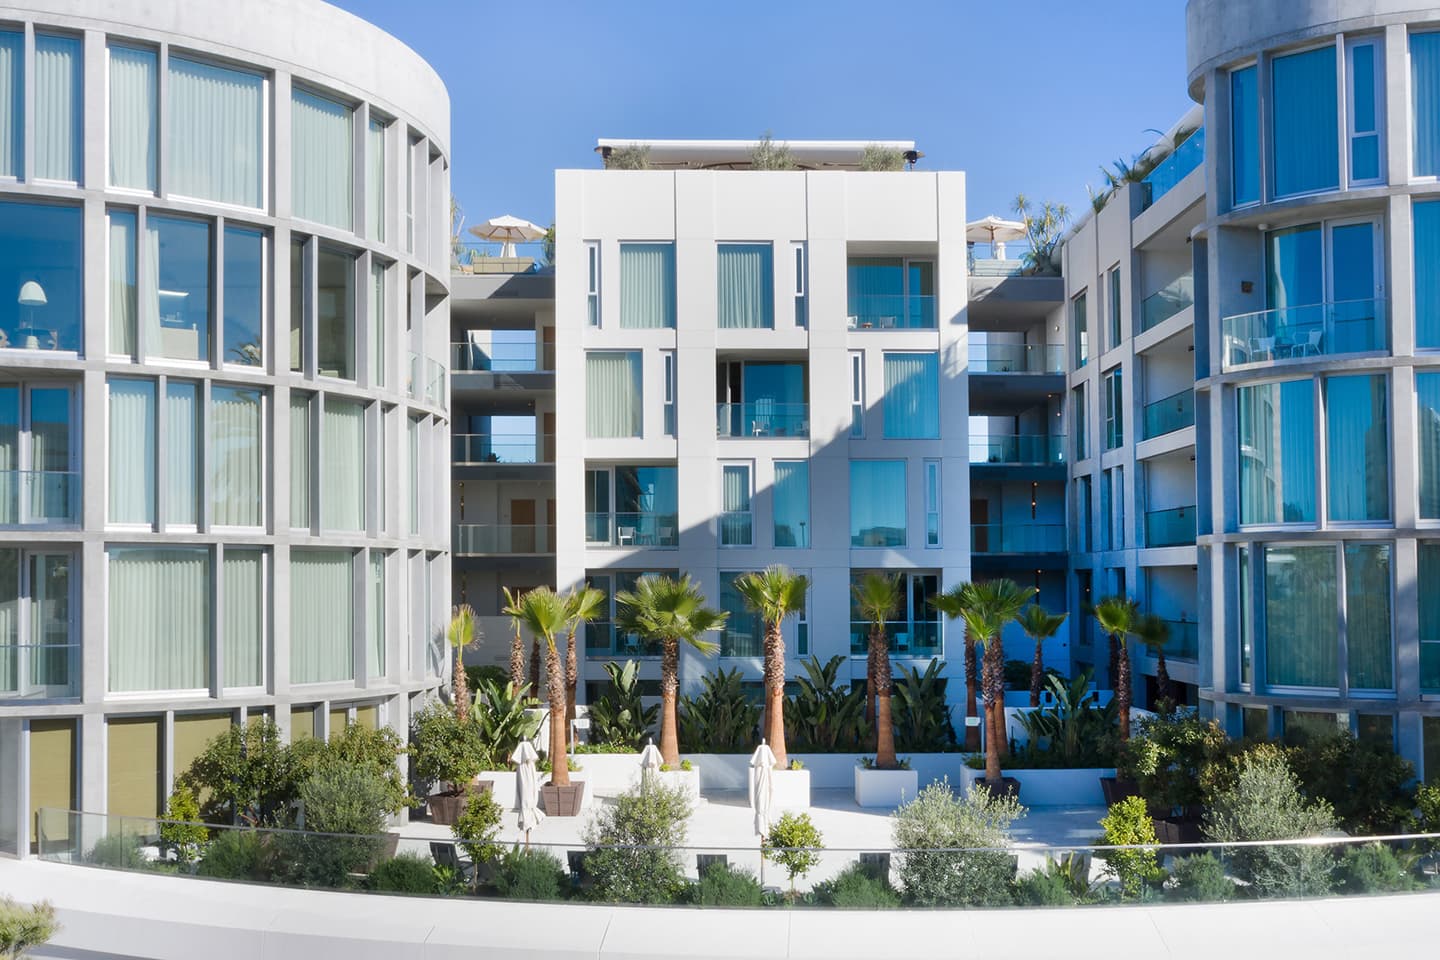 Интерьер отеля Santa Monica Proper в пляжном стиле — проект Келли Уэстлер